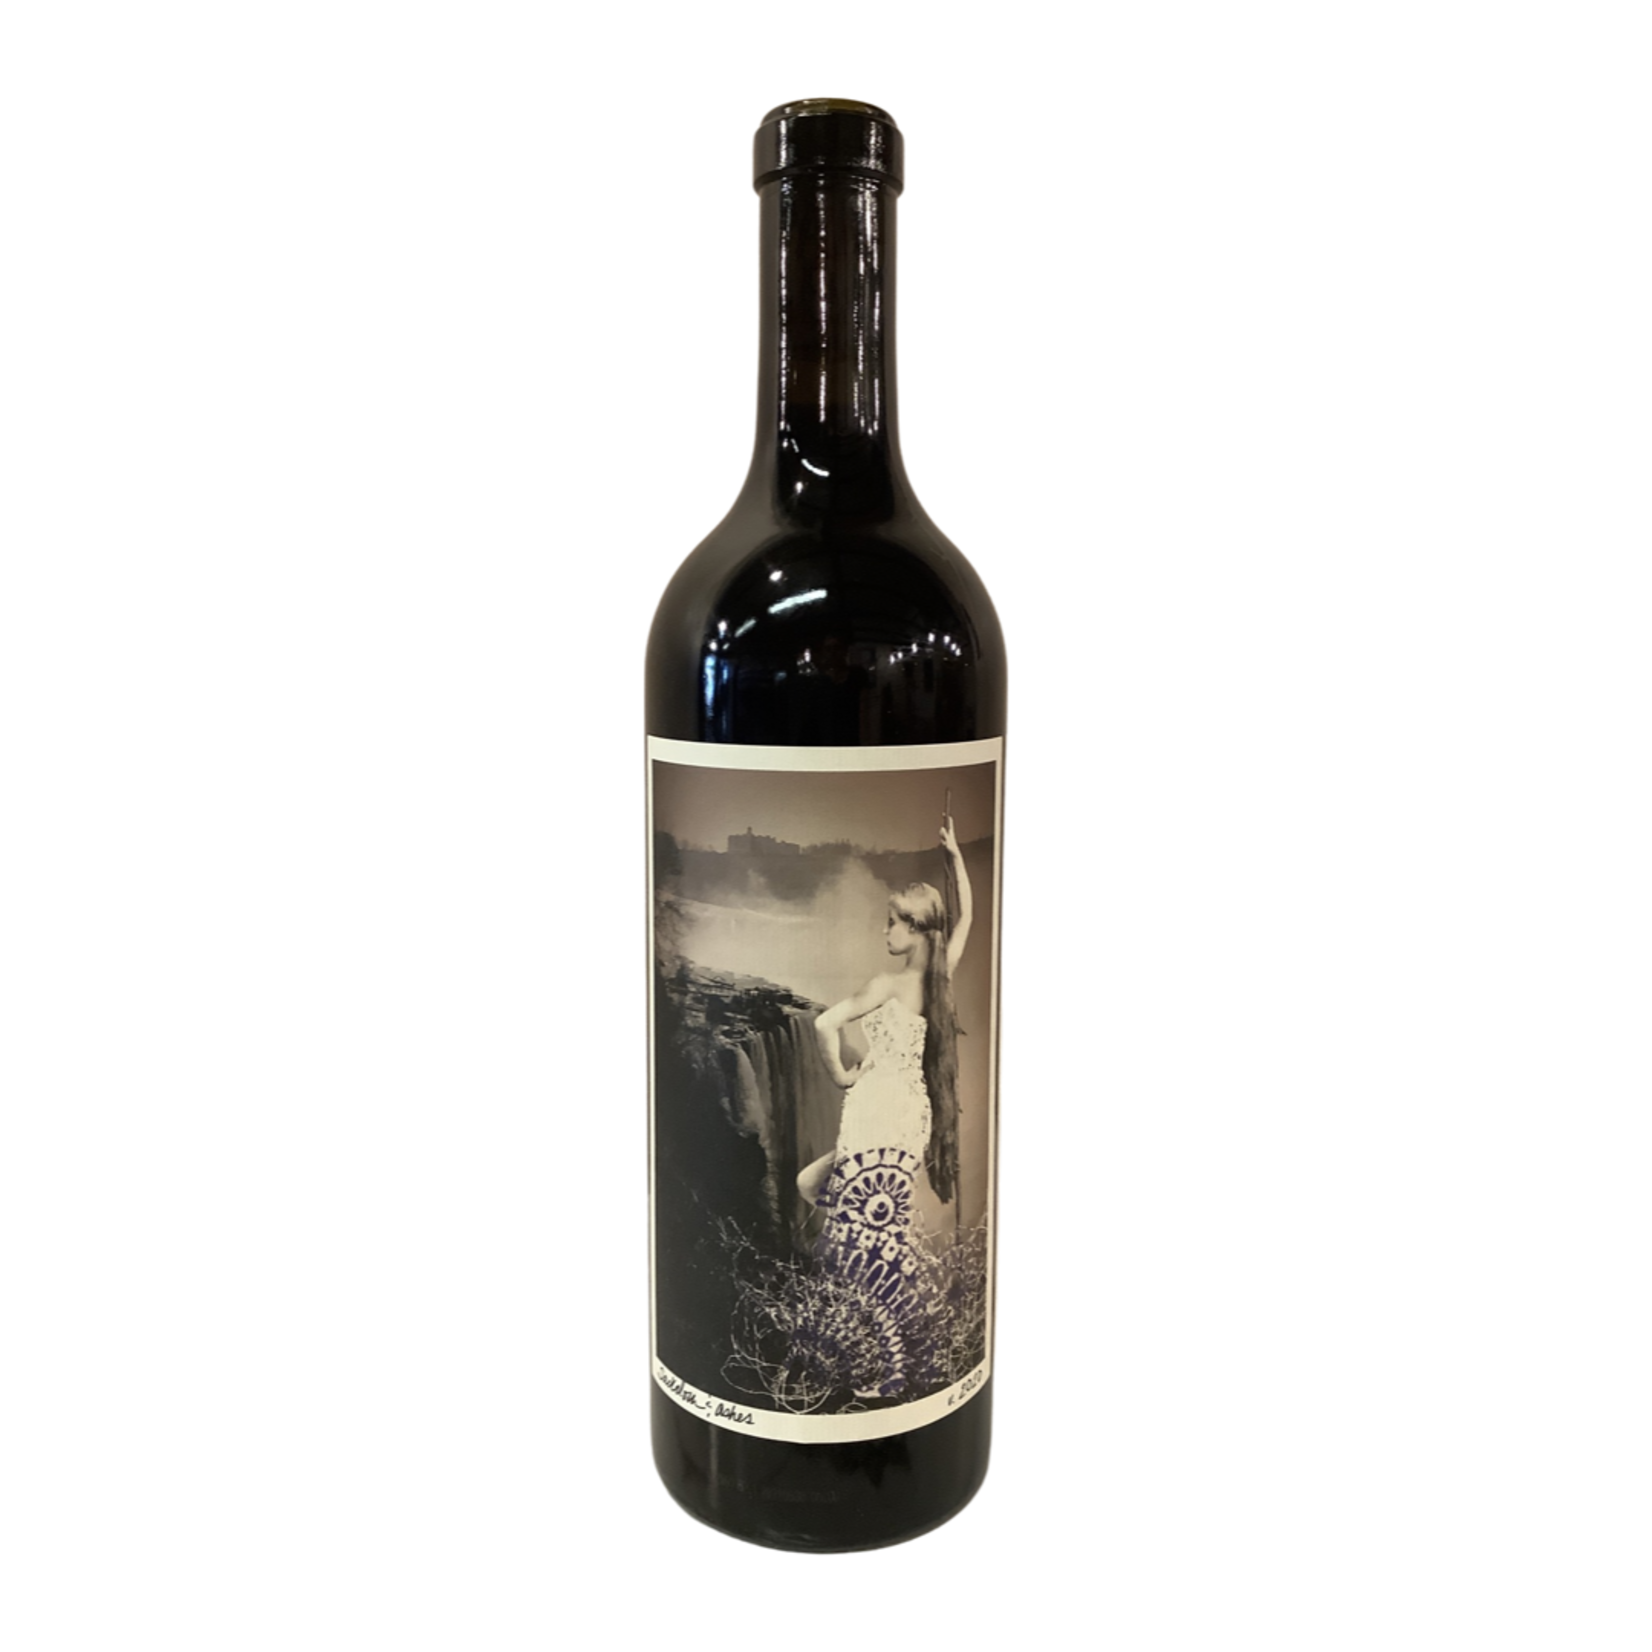 2020 Desparada “Sackcloth & Ashes” Bordeaux Blend, Paso Robles CA